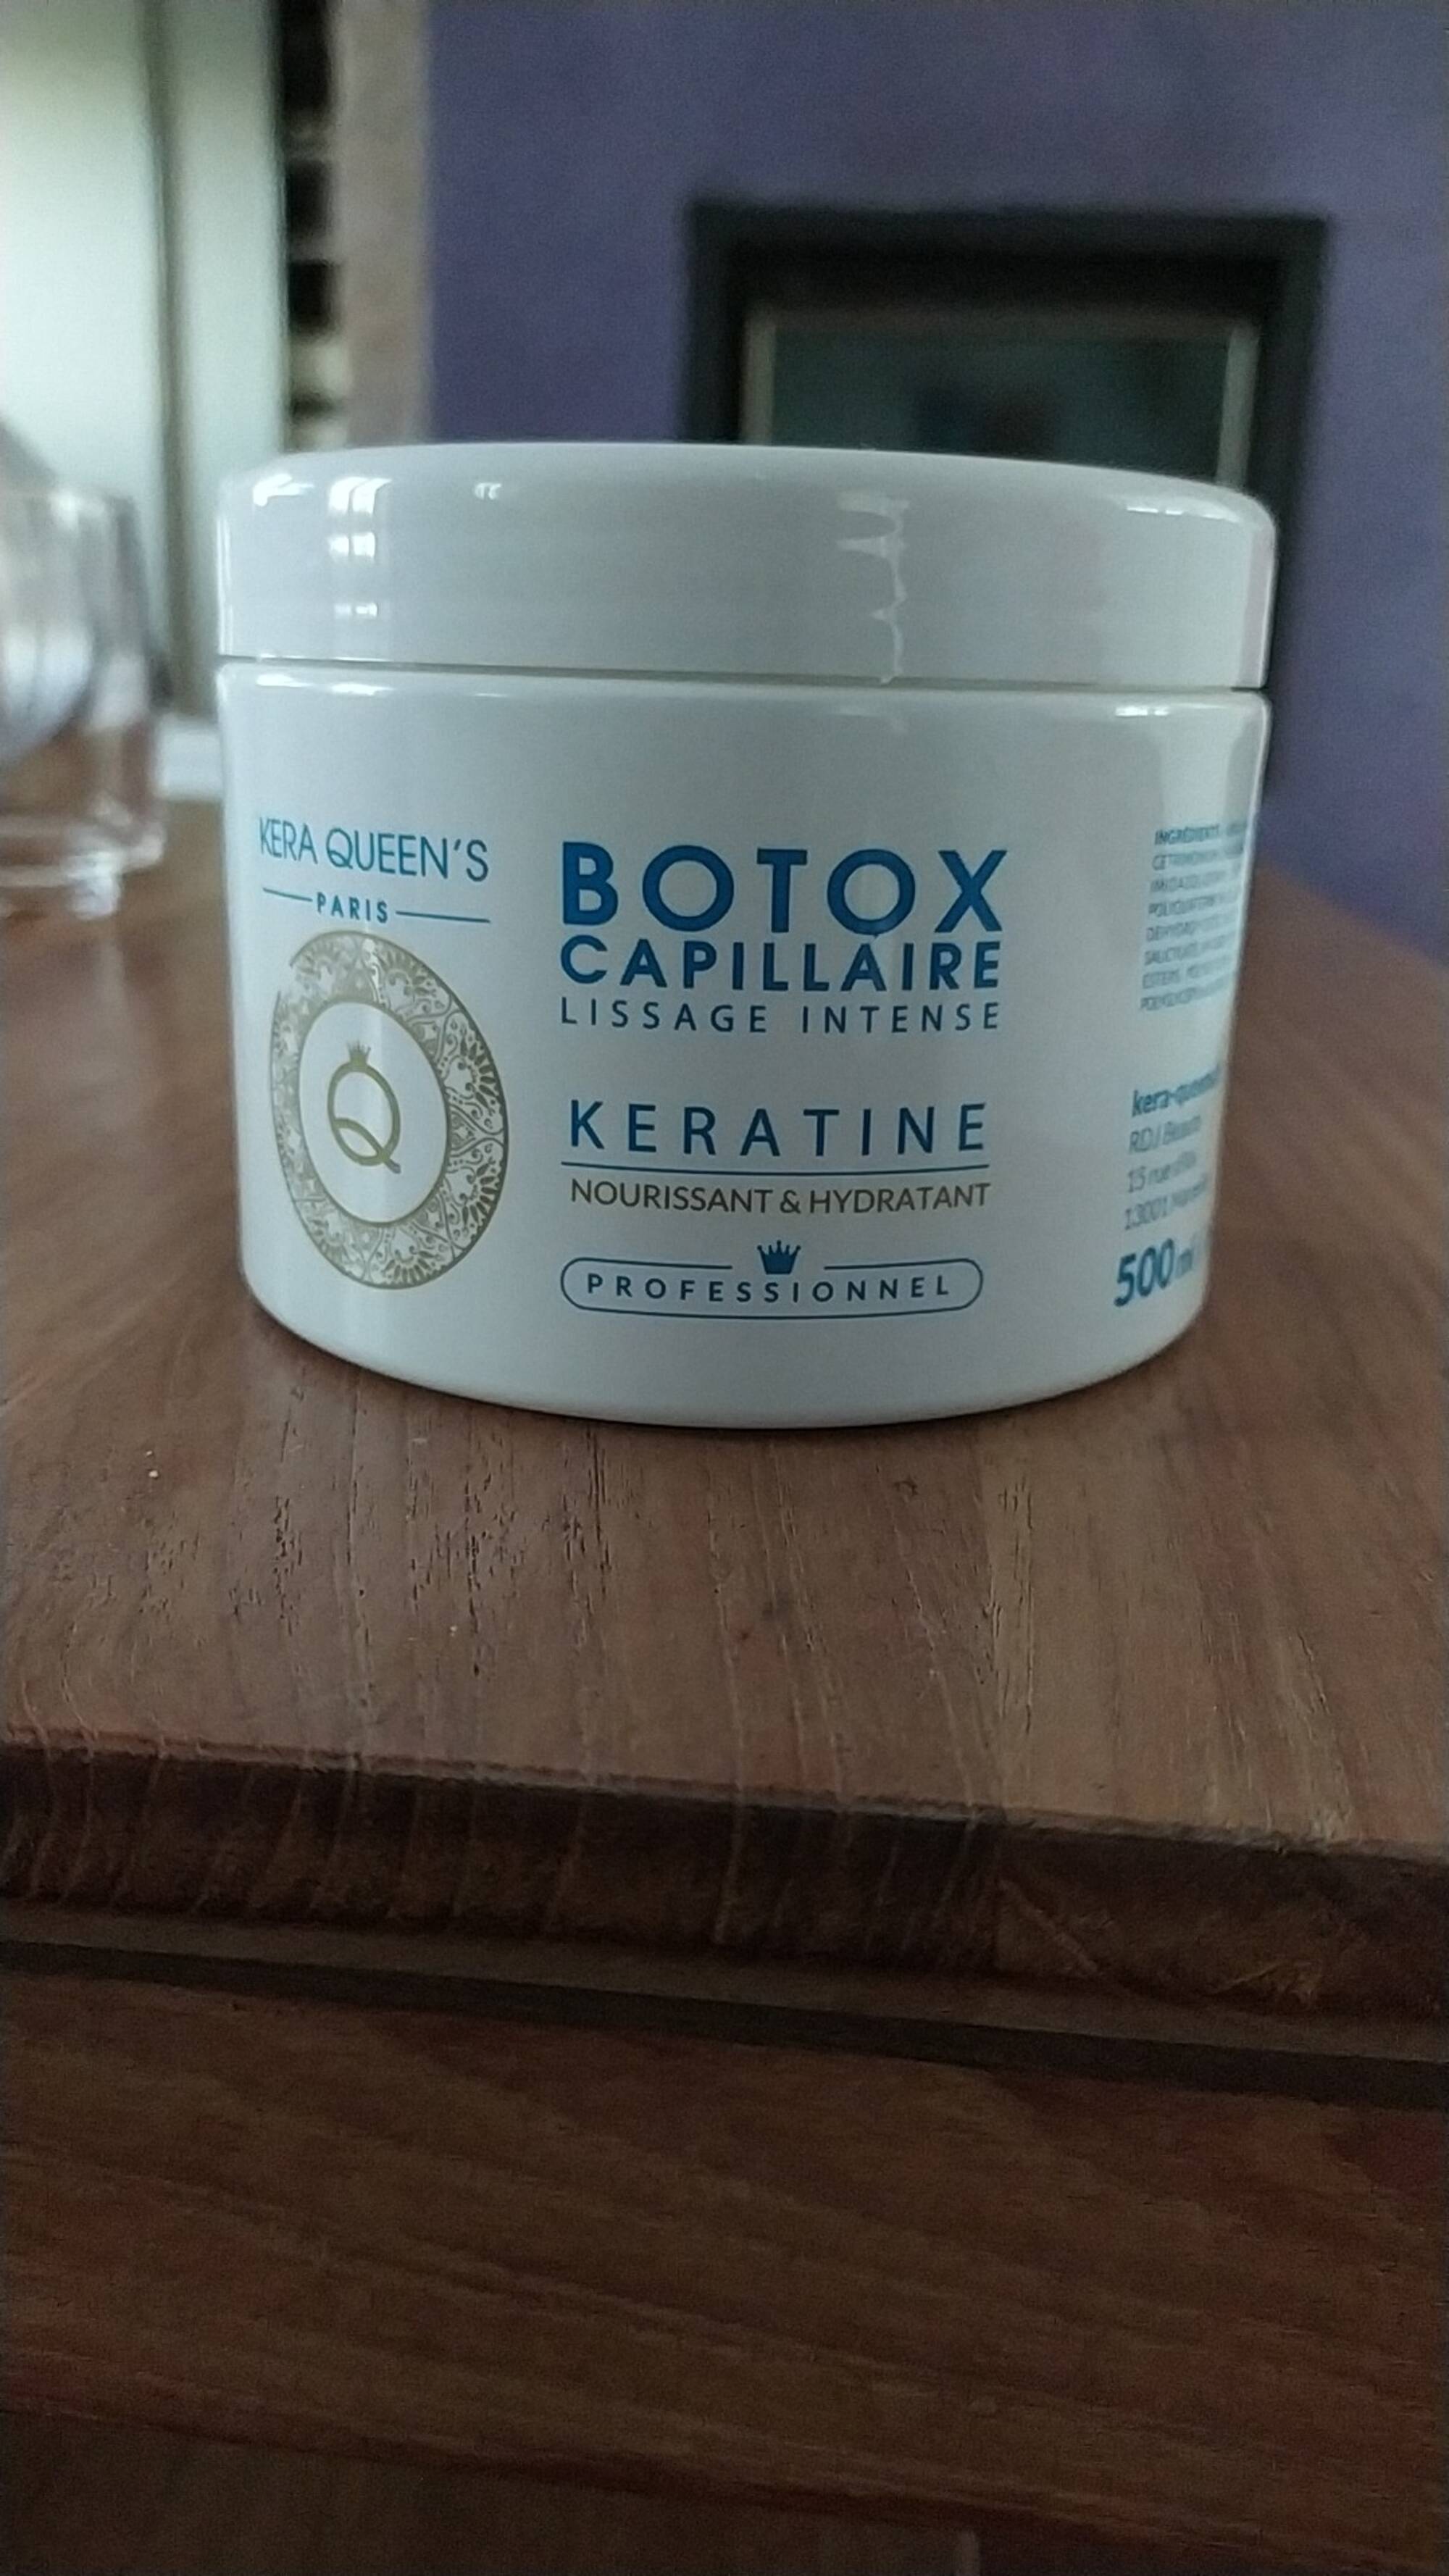 KERA QUEEN'S - Botox capillaire - Kératine lissage intense